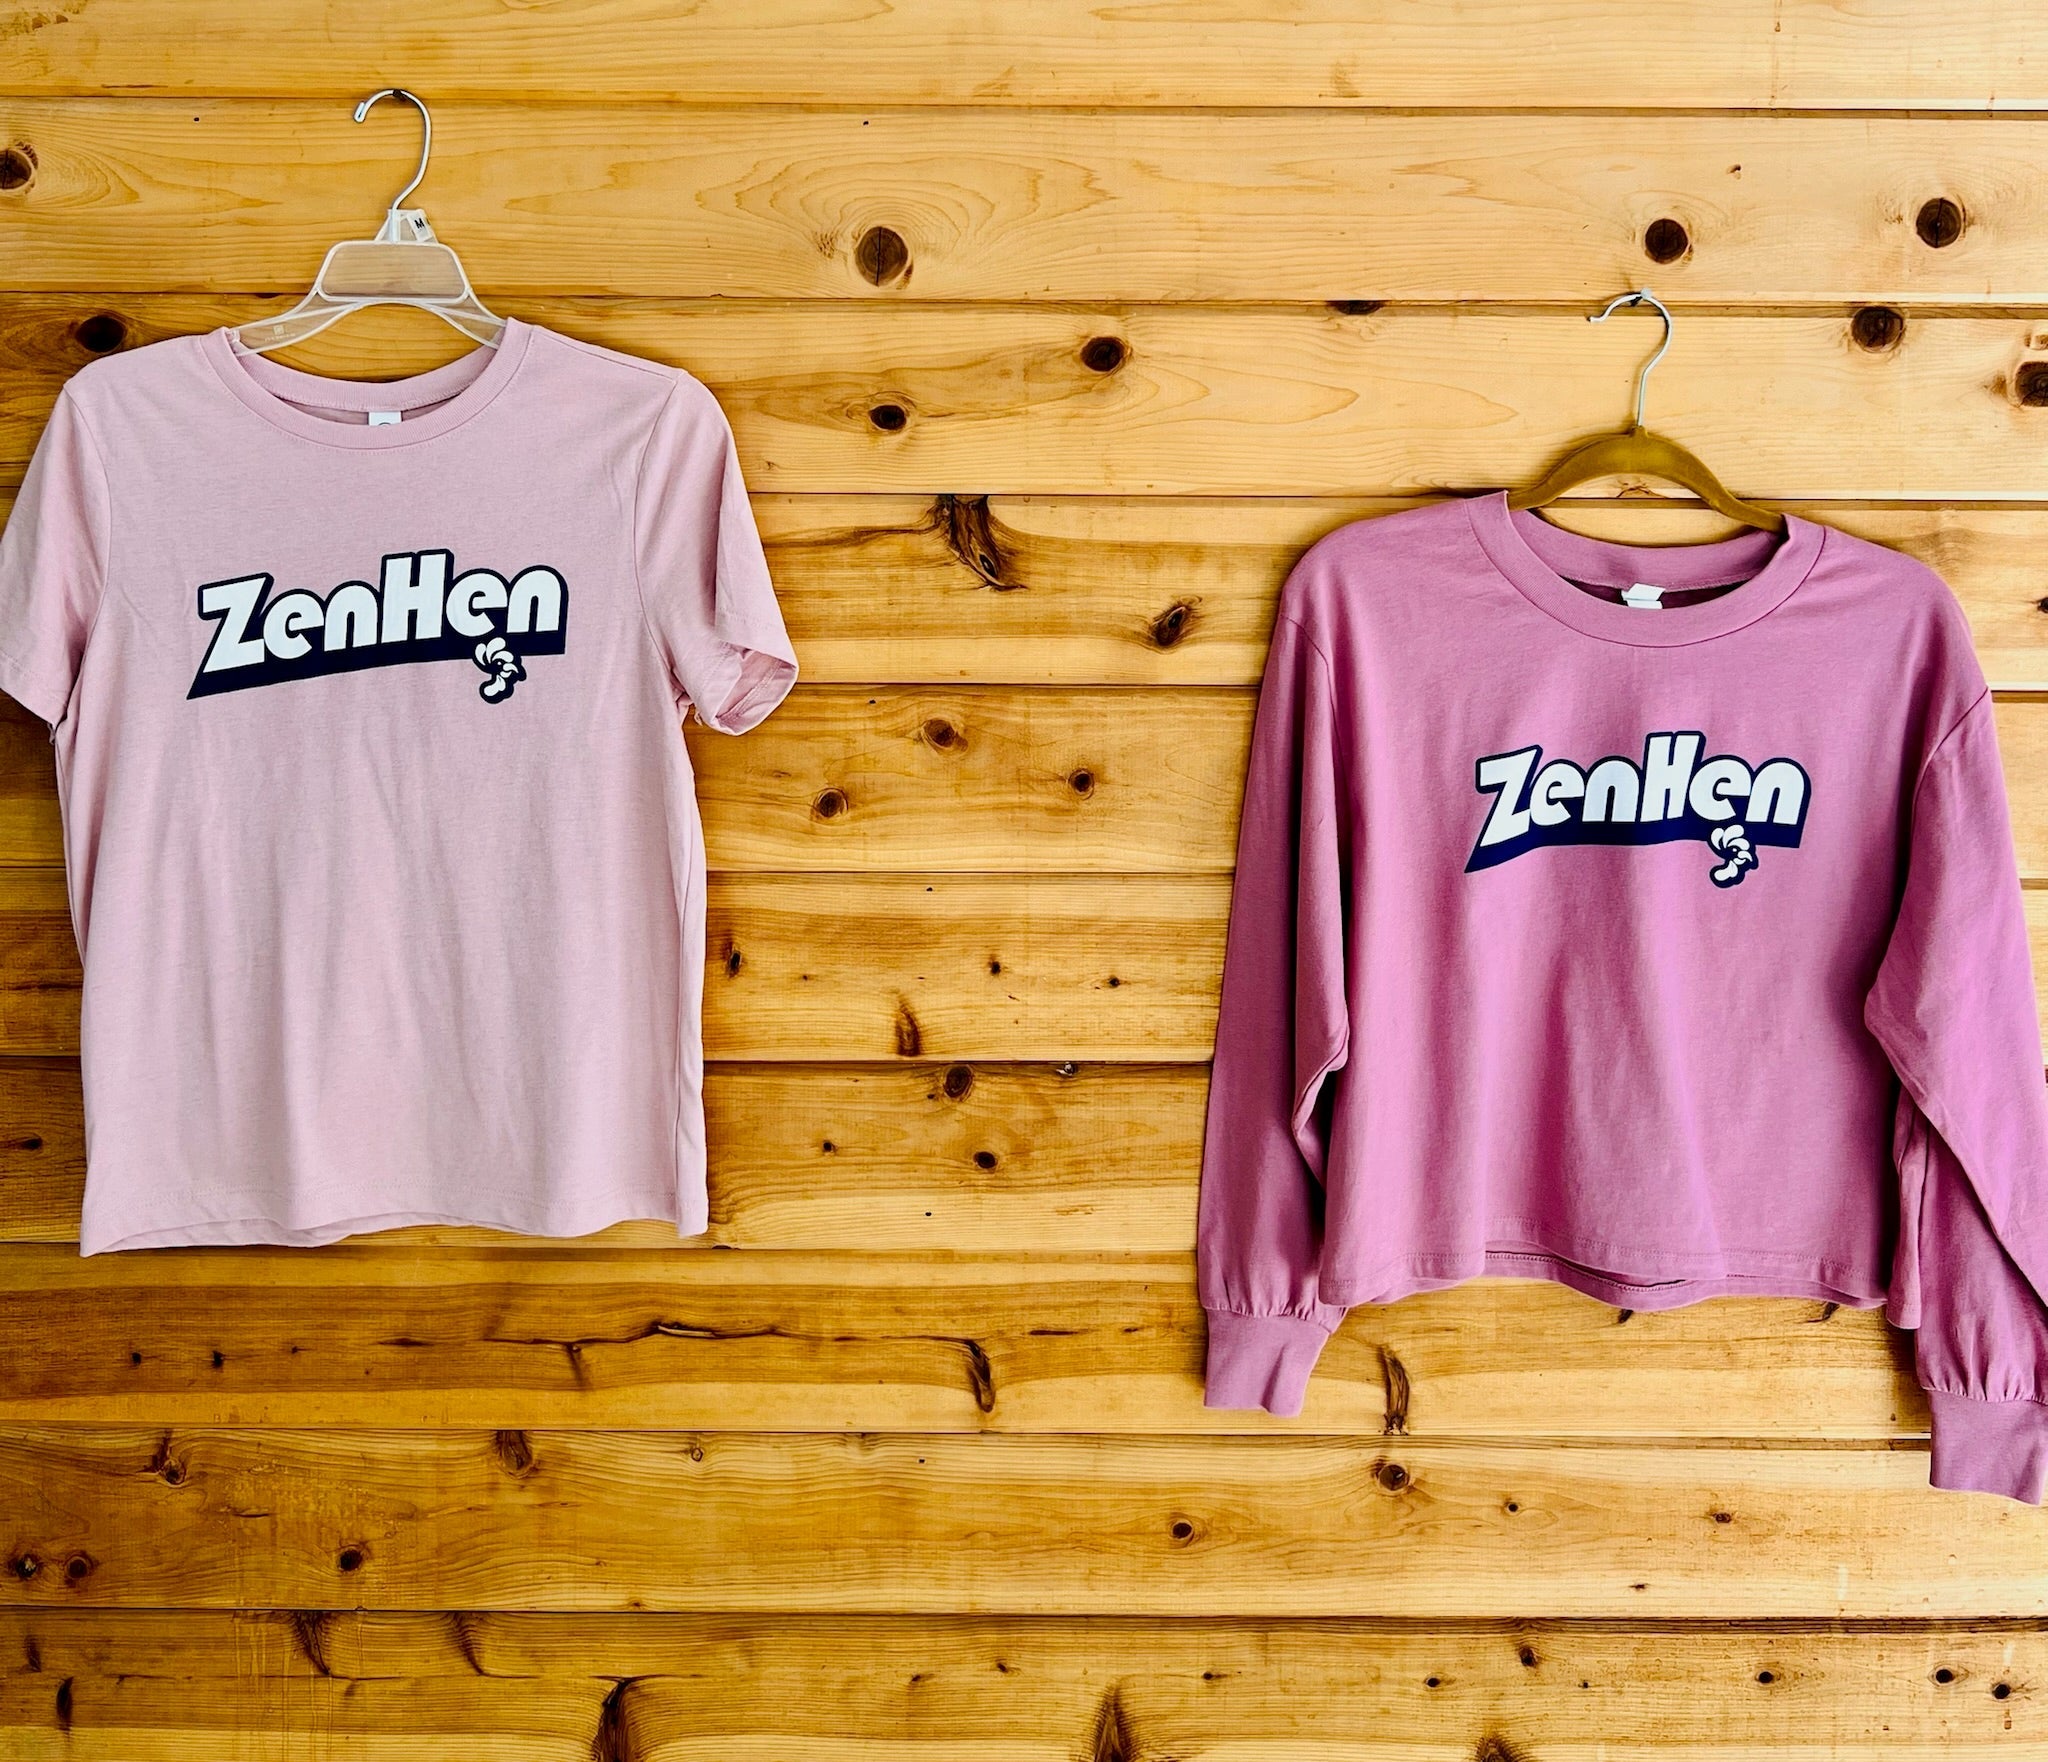 Zen Hen Limited Edition T-Shirt